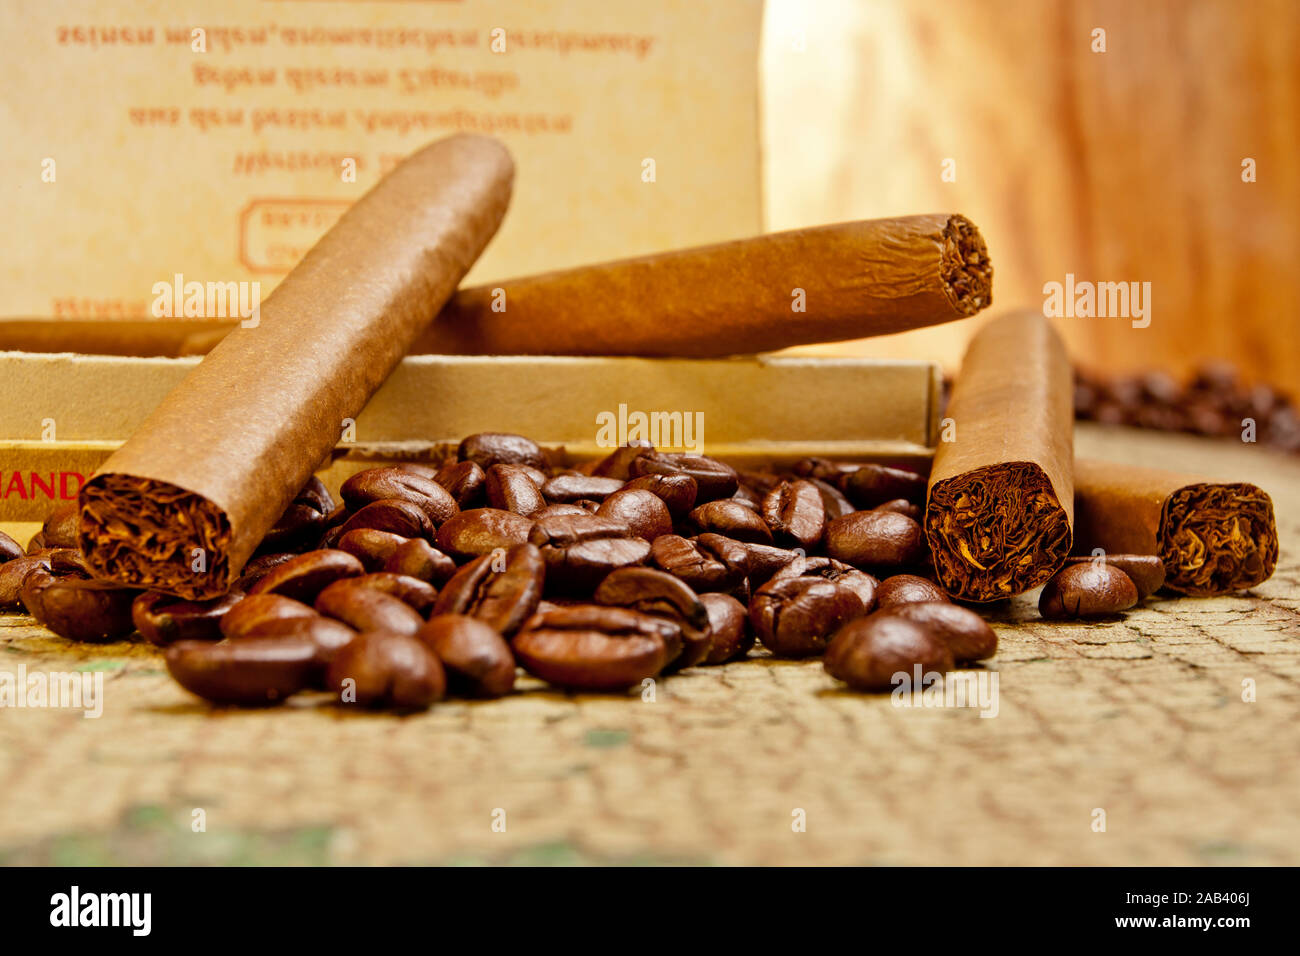 Eine offene Schachtel mit Zigarillos und Kaffeebohnen |An open box of cigars, cheroots and coffee beans| Stock Photo